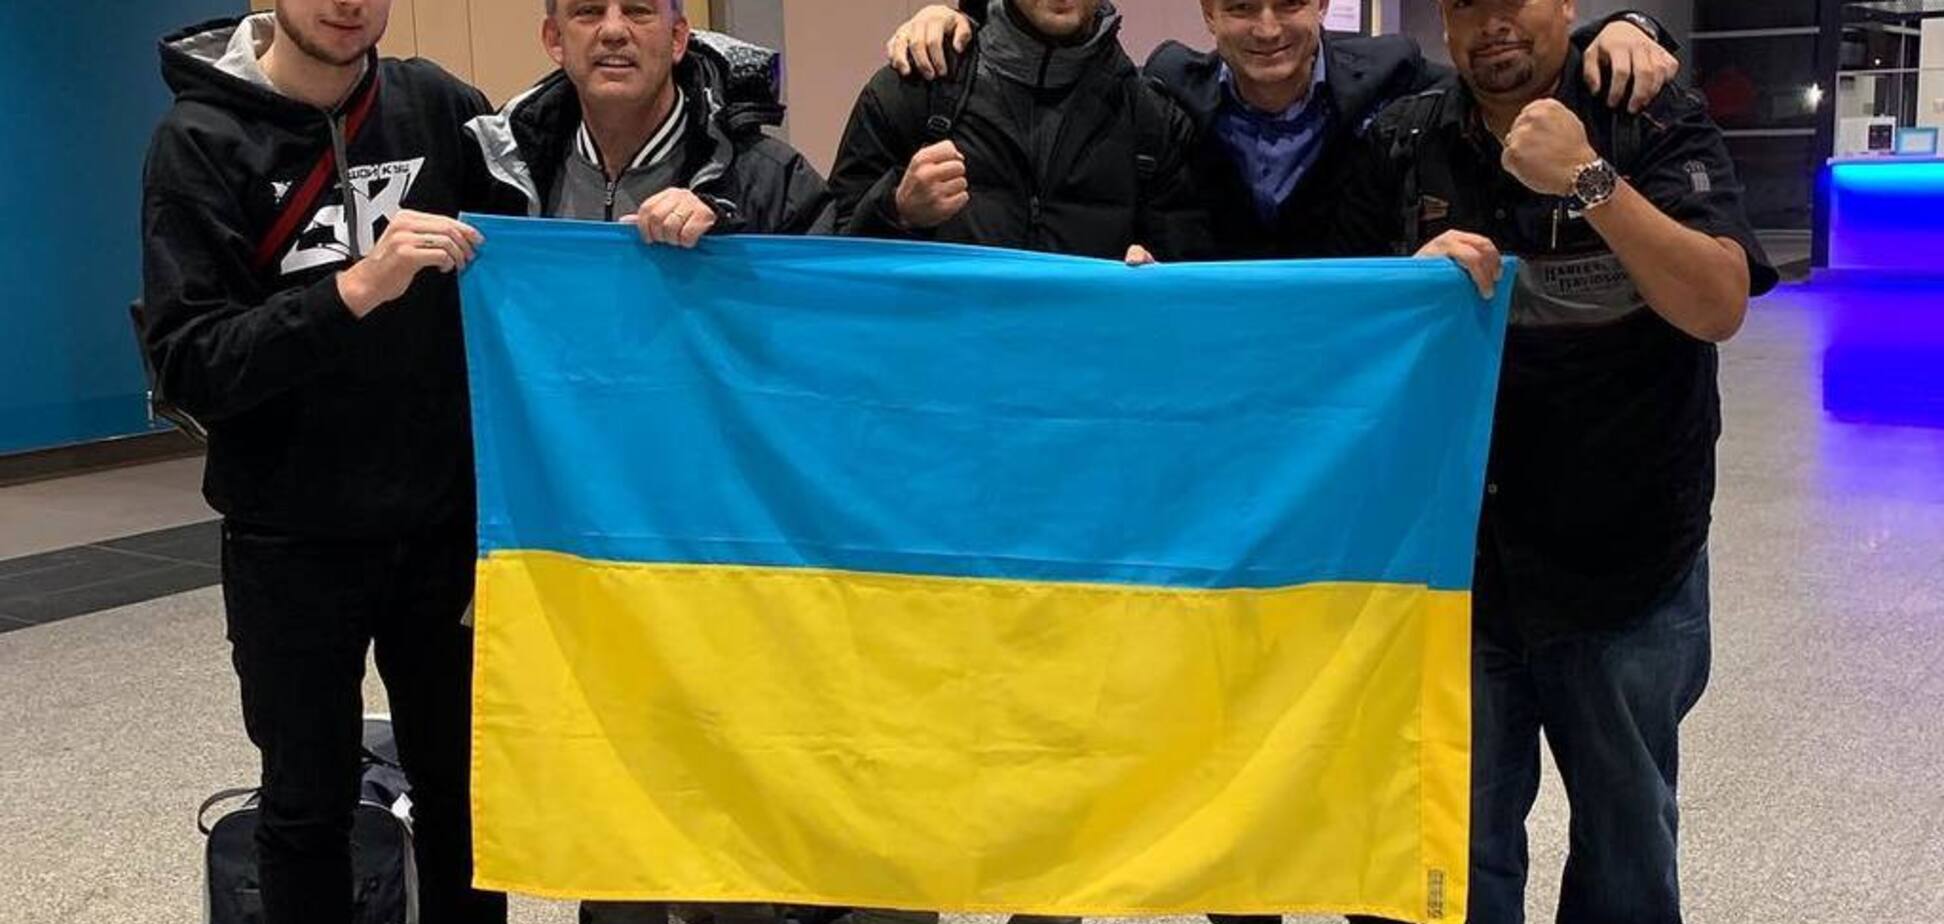 Гвоздик с флагом Украины произвел фурор в Канаде — фотофакт